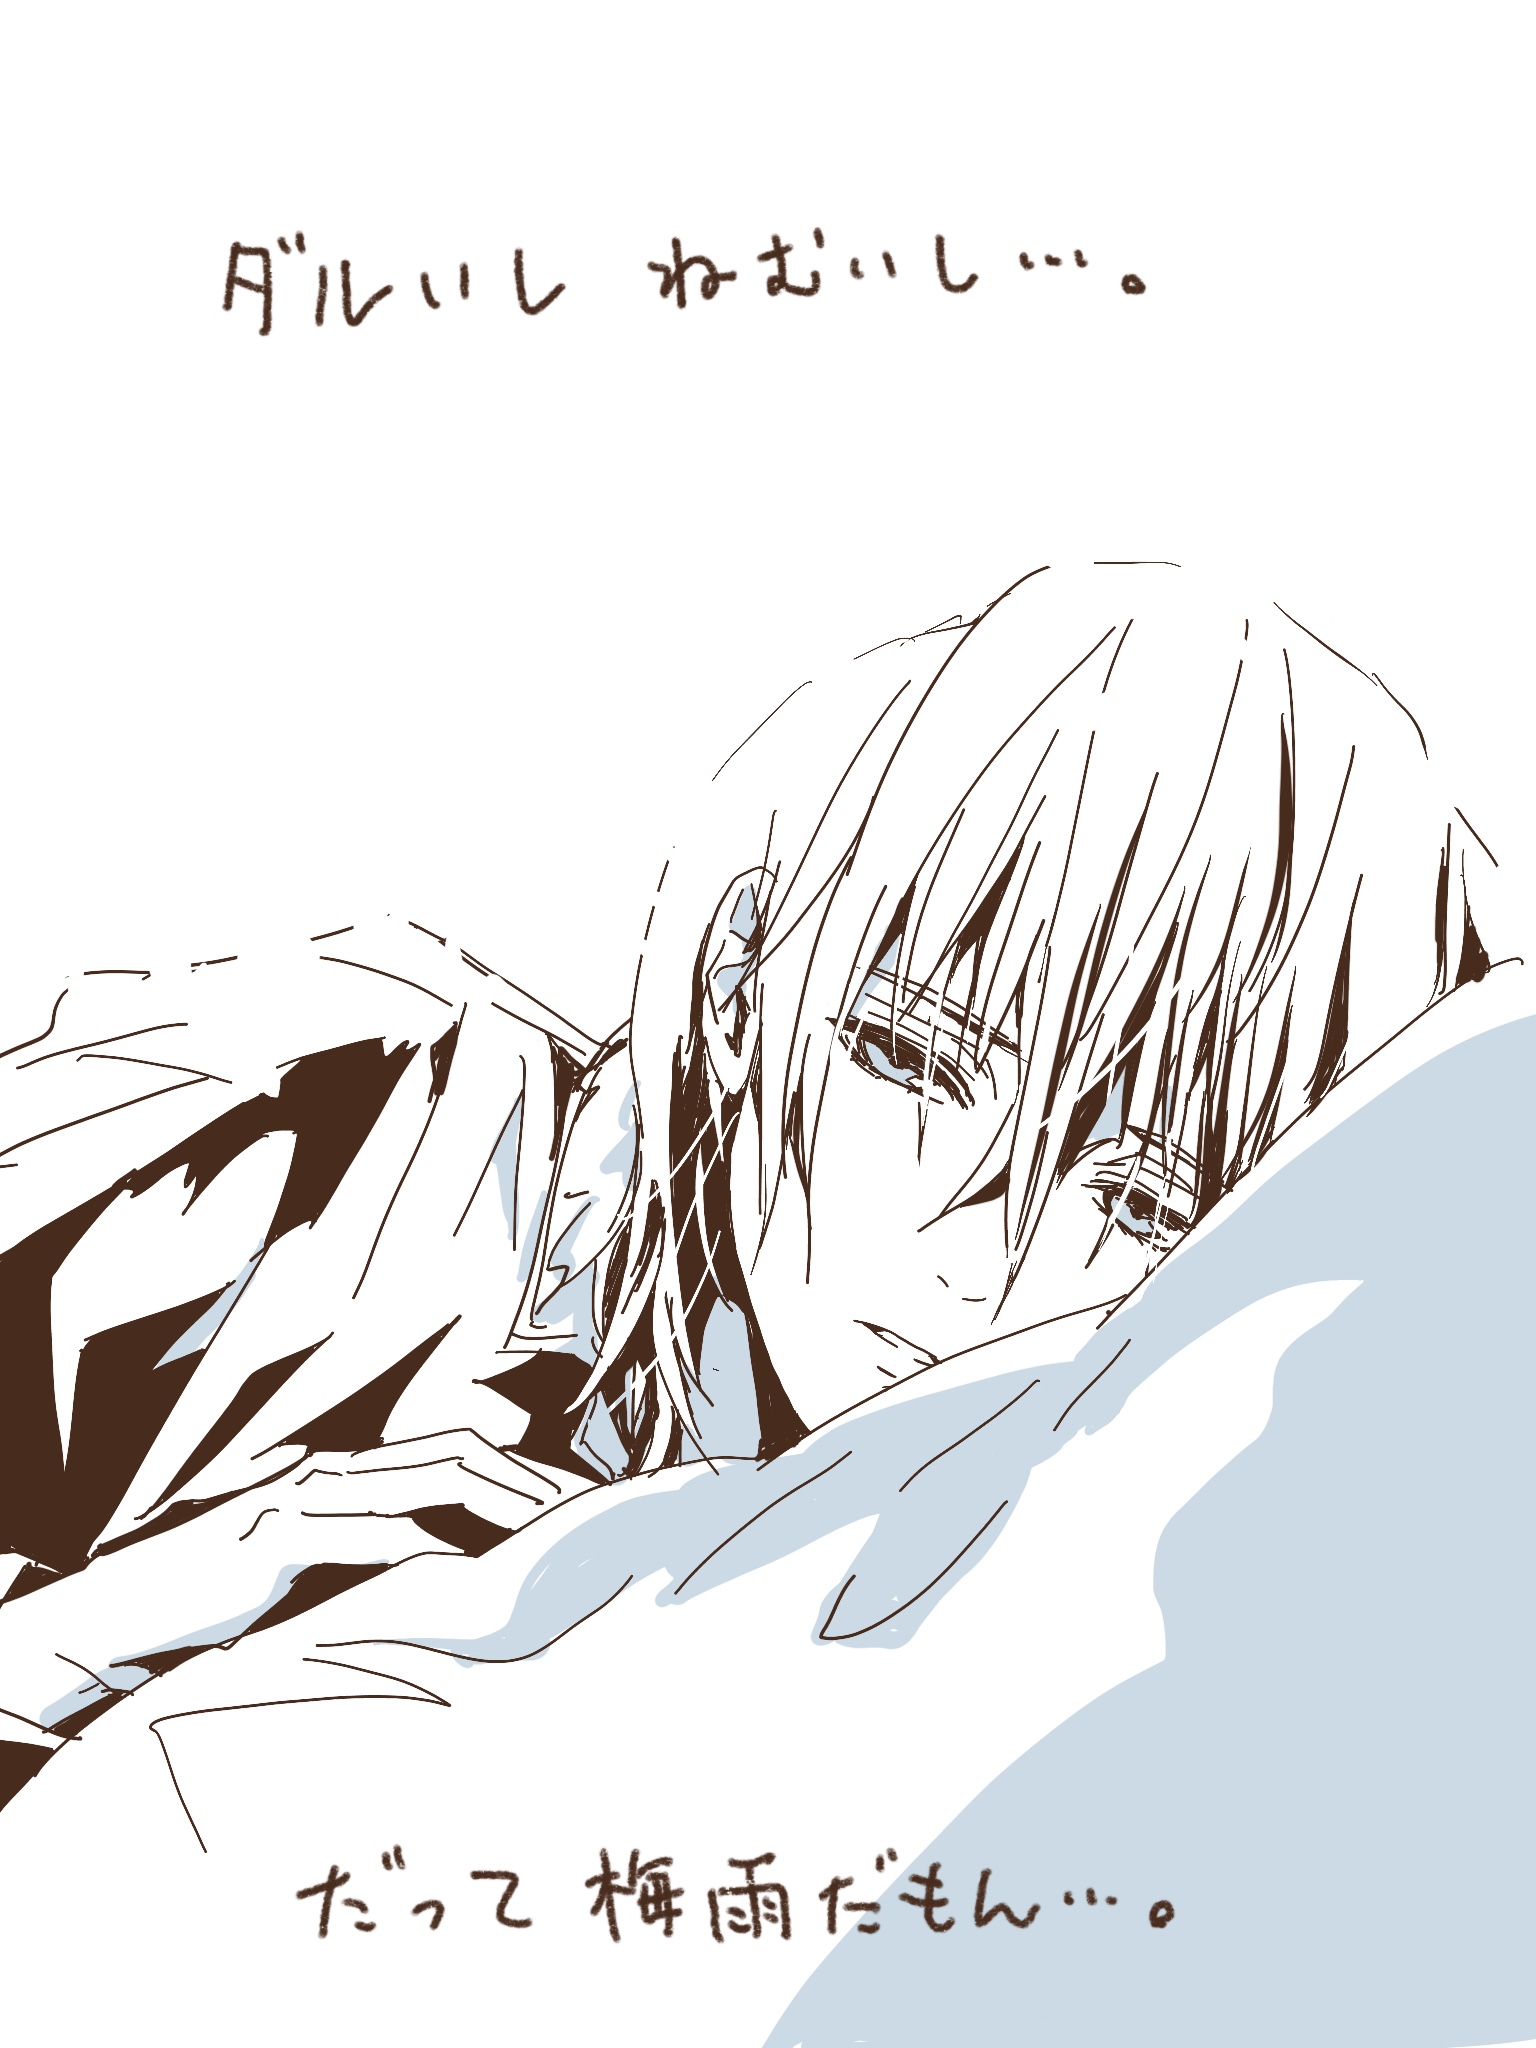 ダルいし眠い